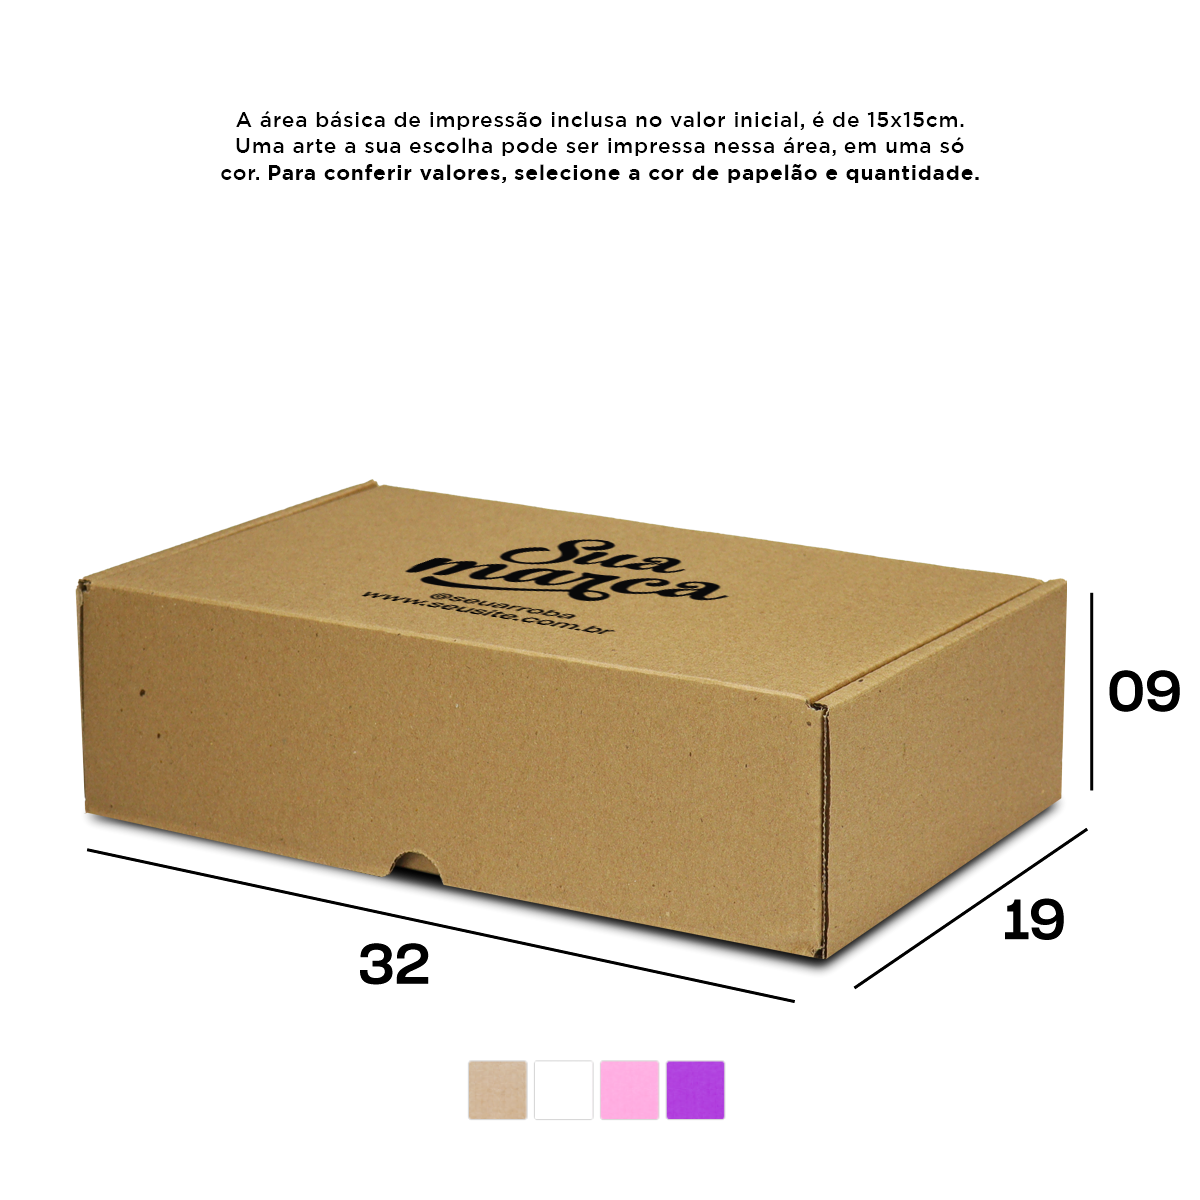 Caixa de Papelão Personalizada (32x19x09) Sedex 07